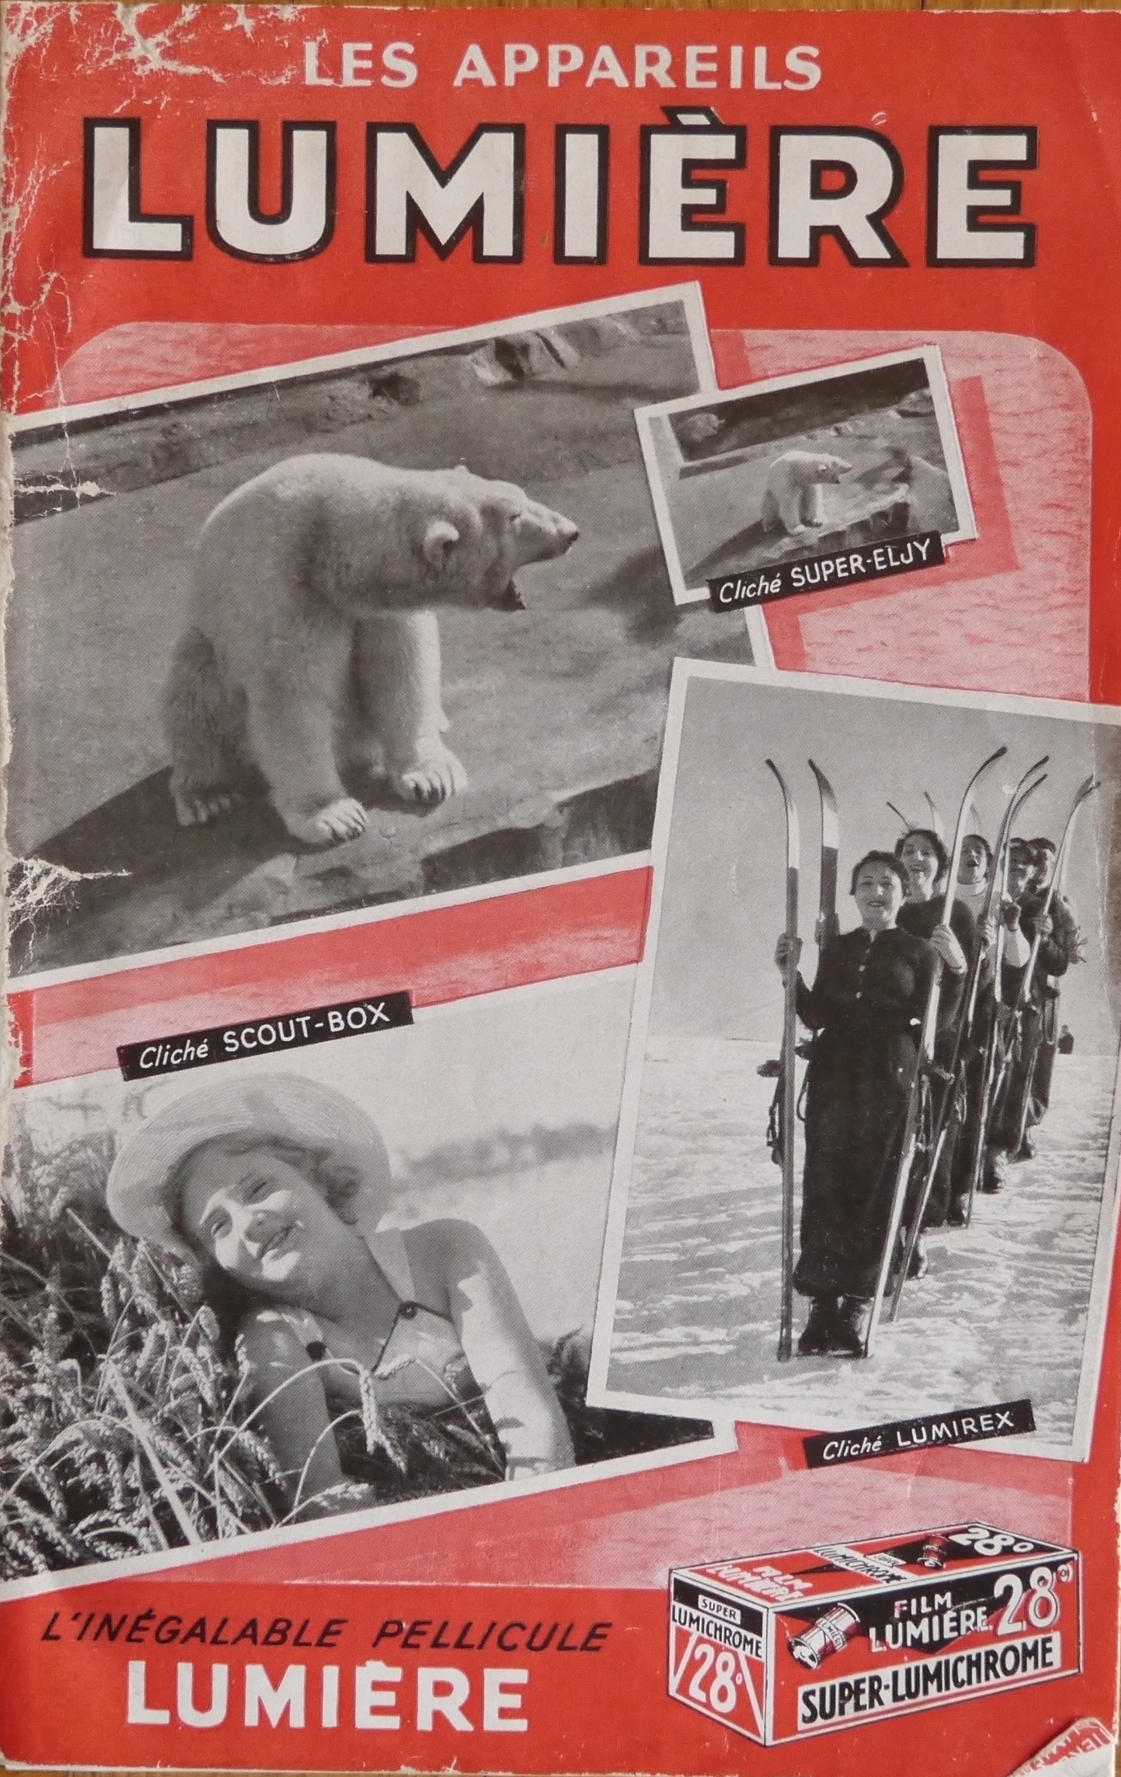 Catalogue 1947